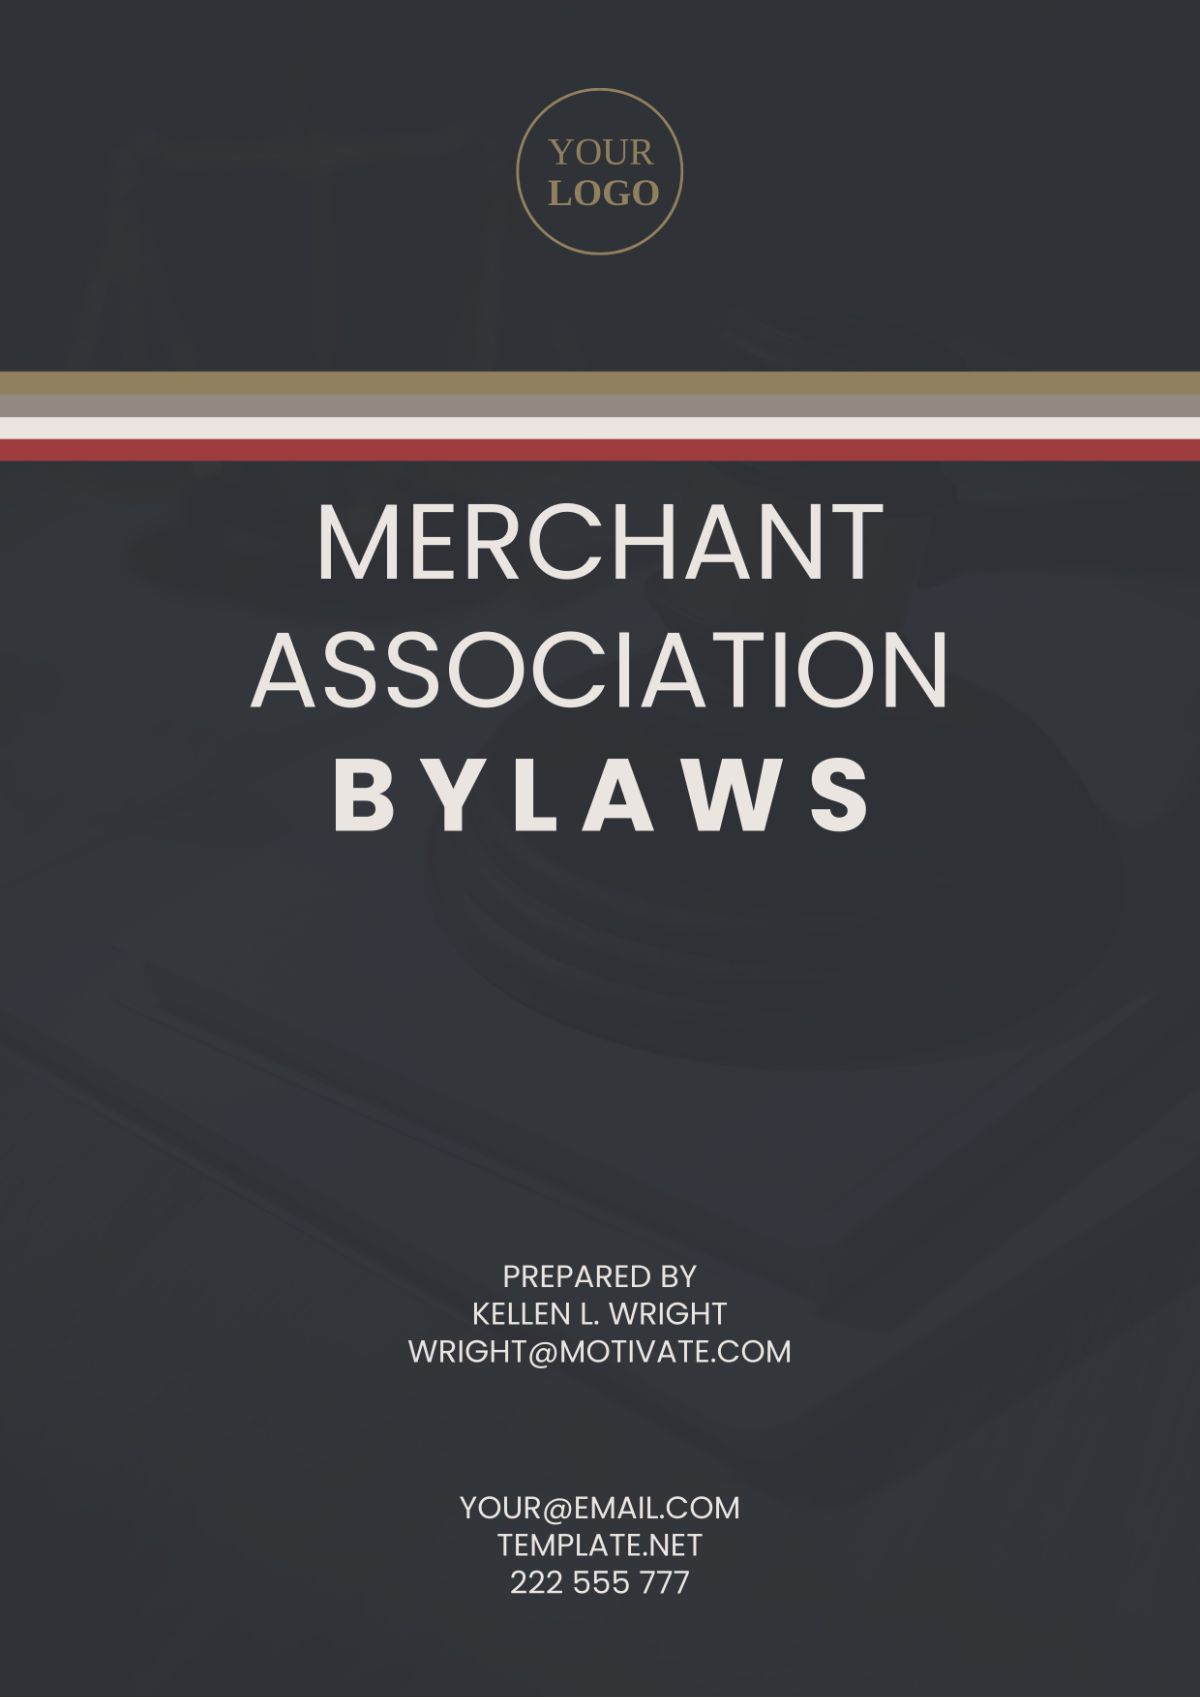 Merchant Association Bylaws Template